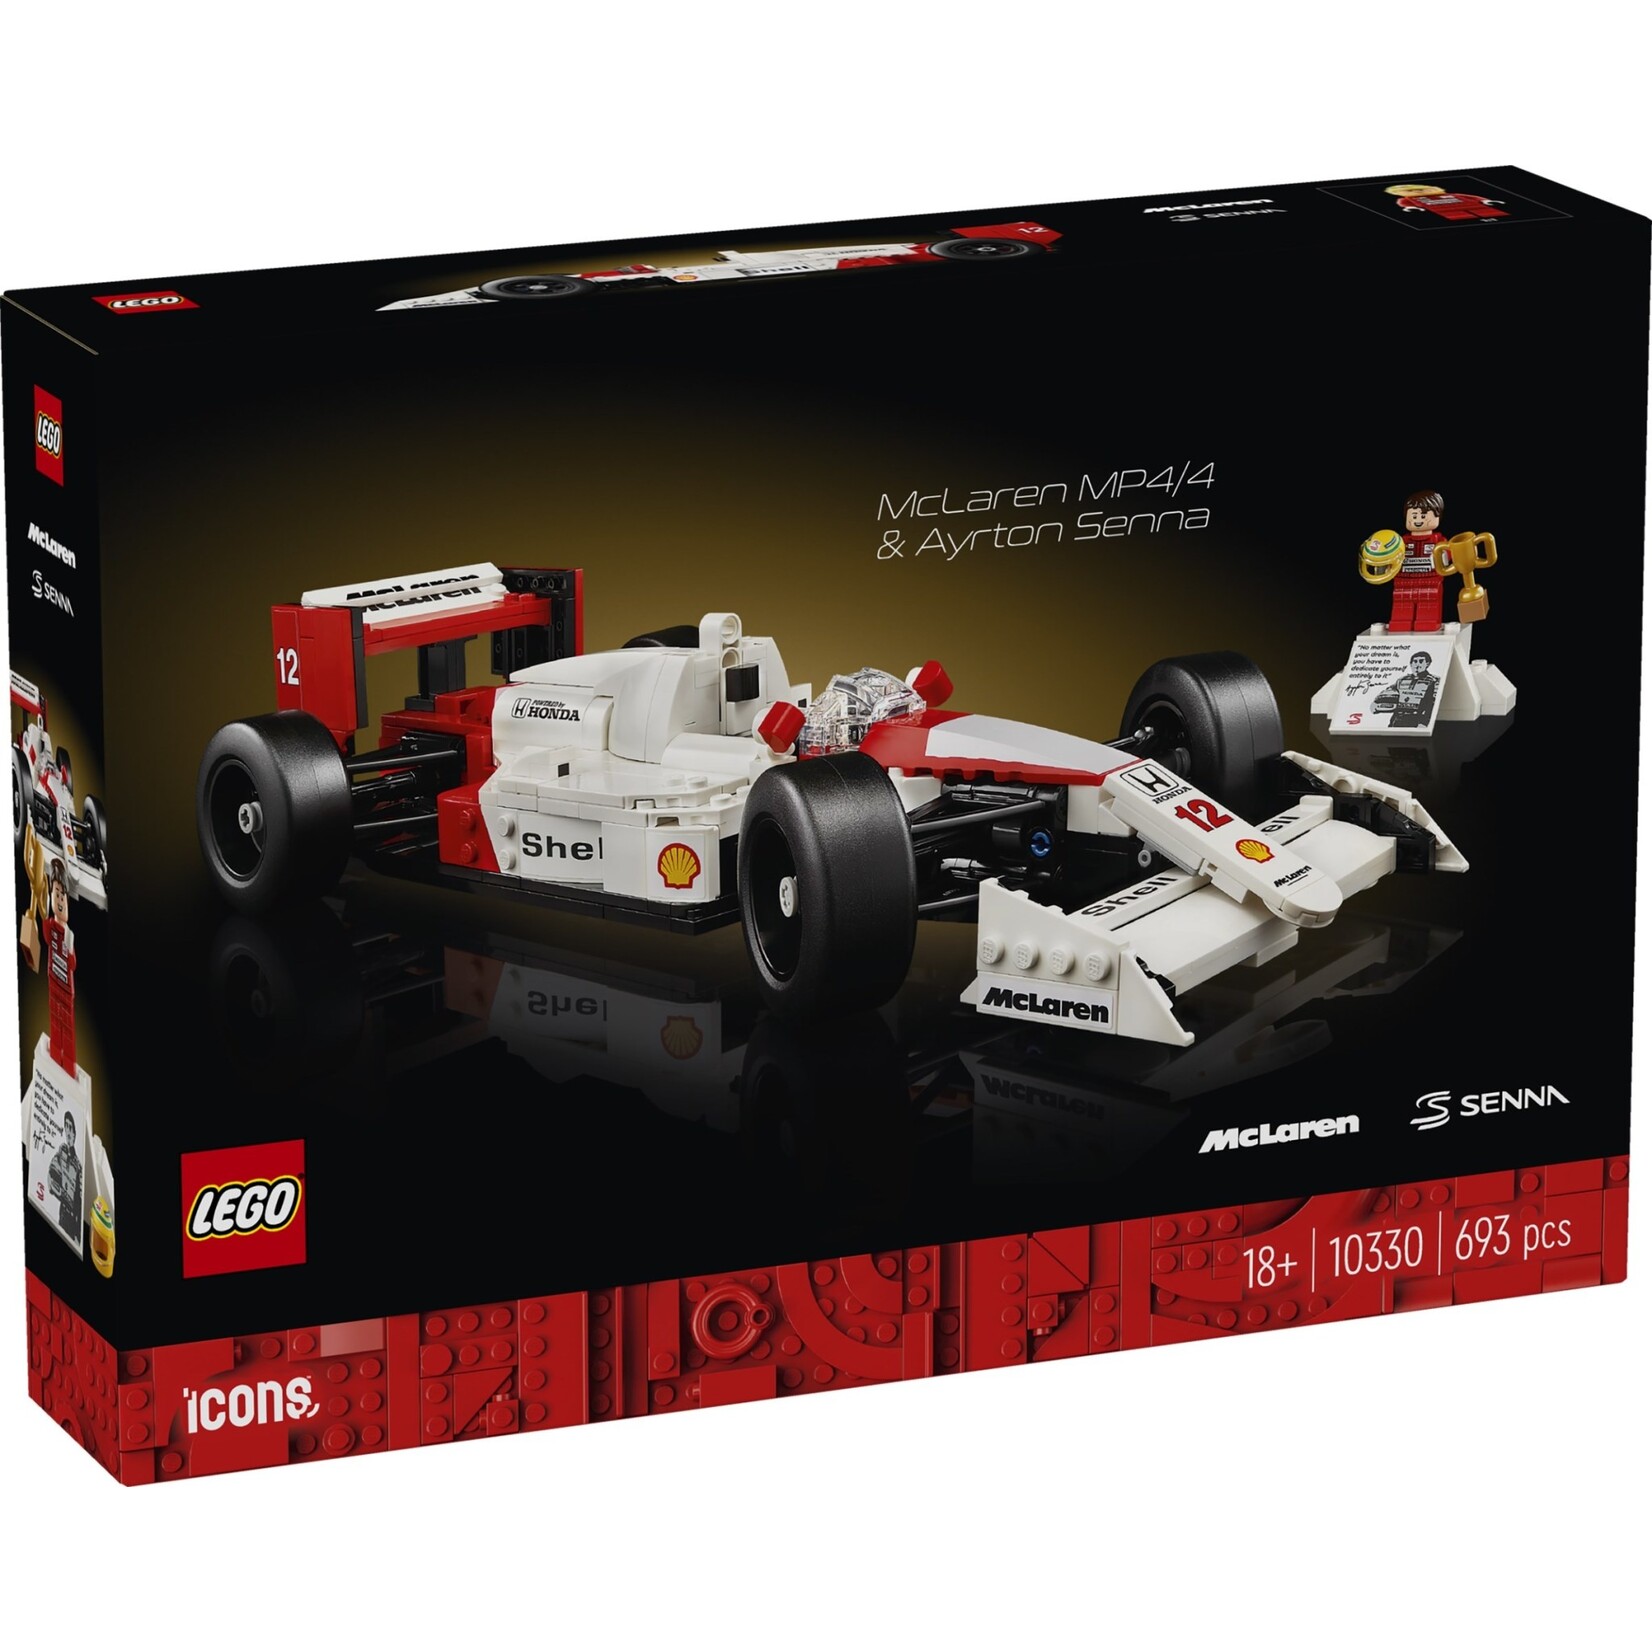 LEGO McLaren MP4/4 & Ayrton Senna - 10330